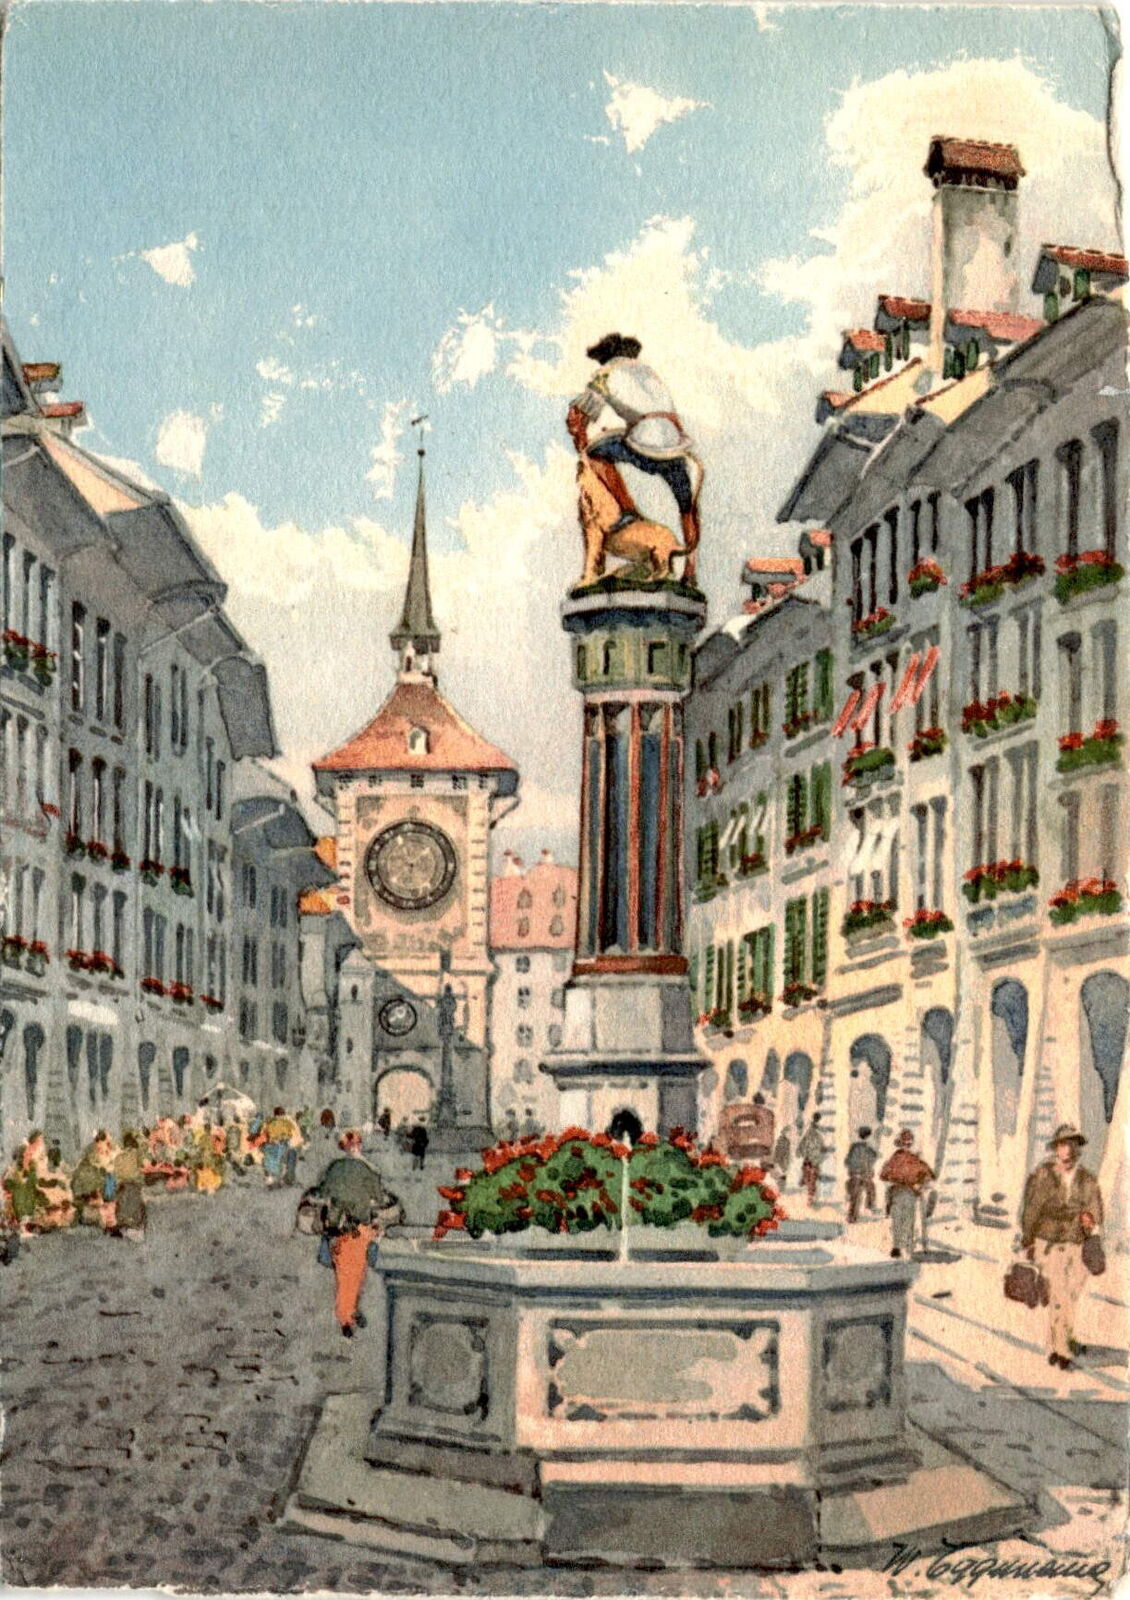 Bern, Switzerland, Simsonbrunnen fountain, Kramgasse street, Mr. Carter Postcard